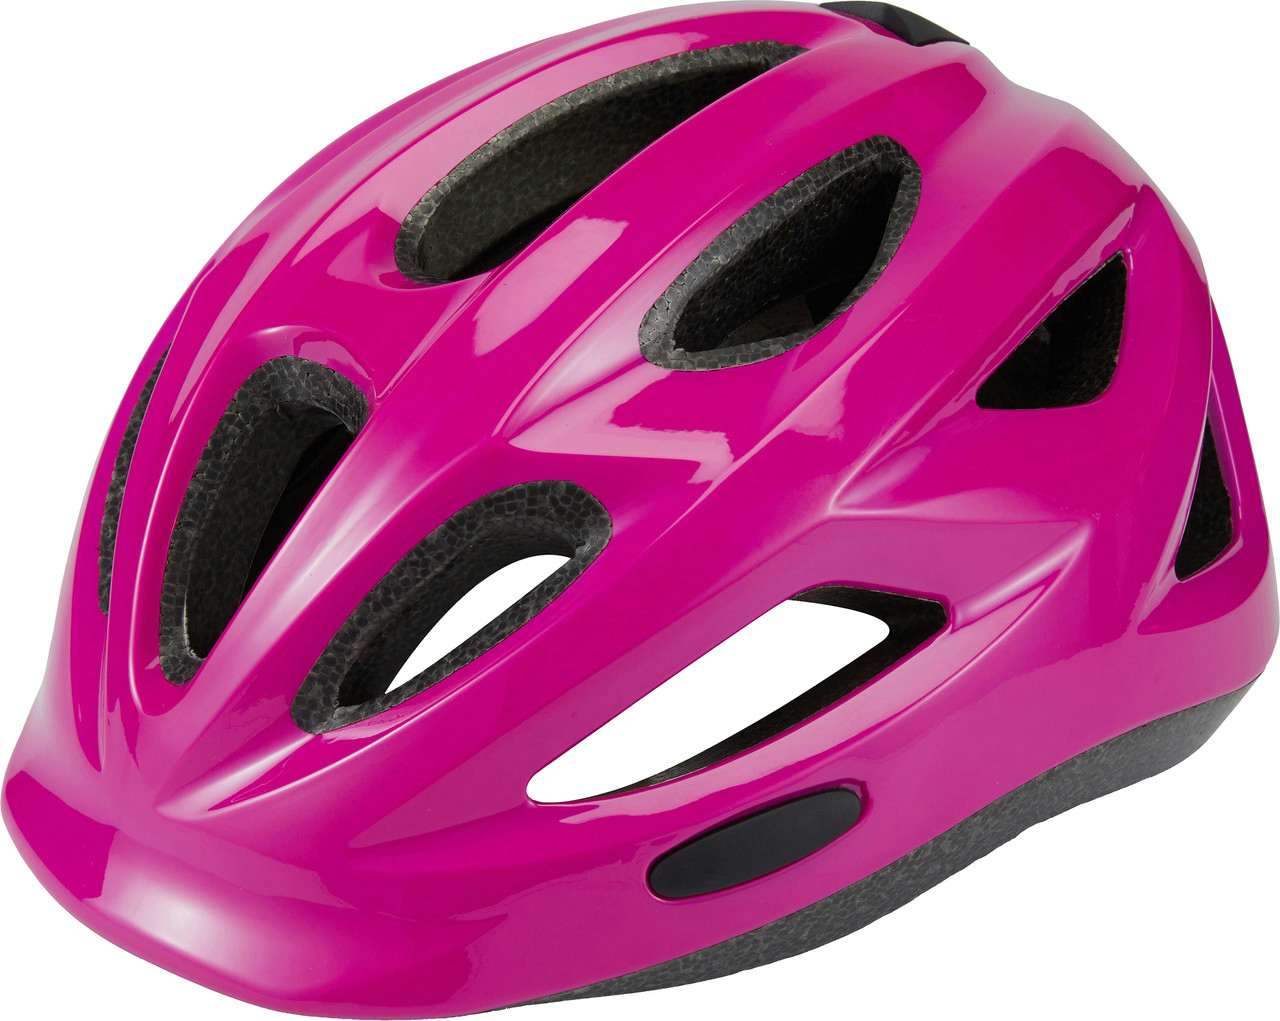 Ace Helmet Gloss Purple